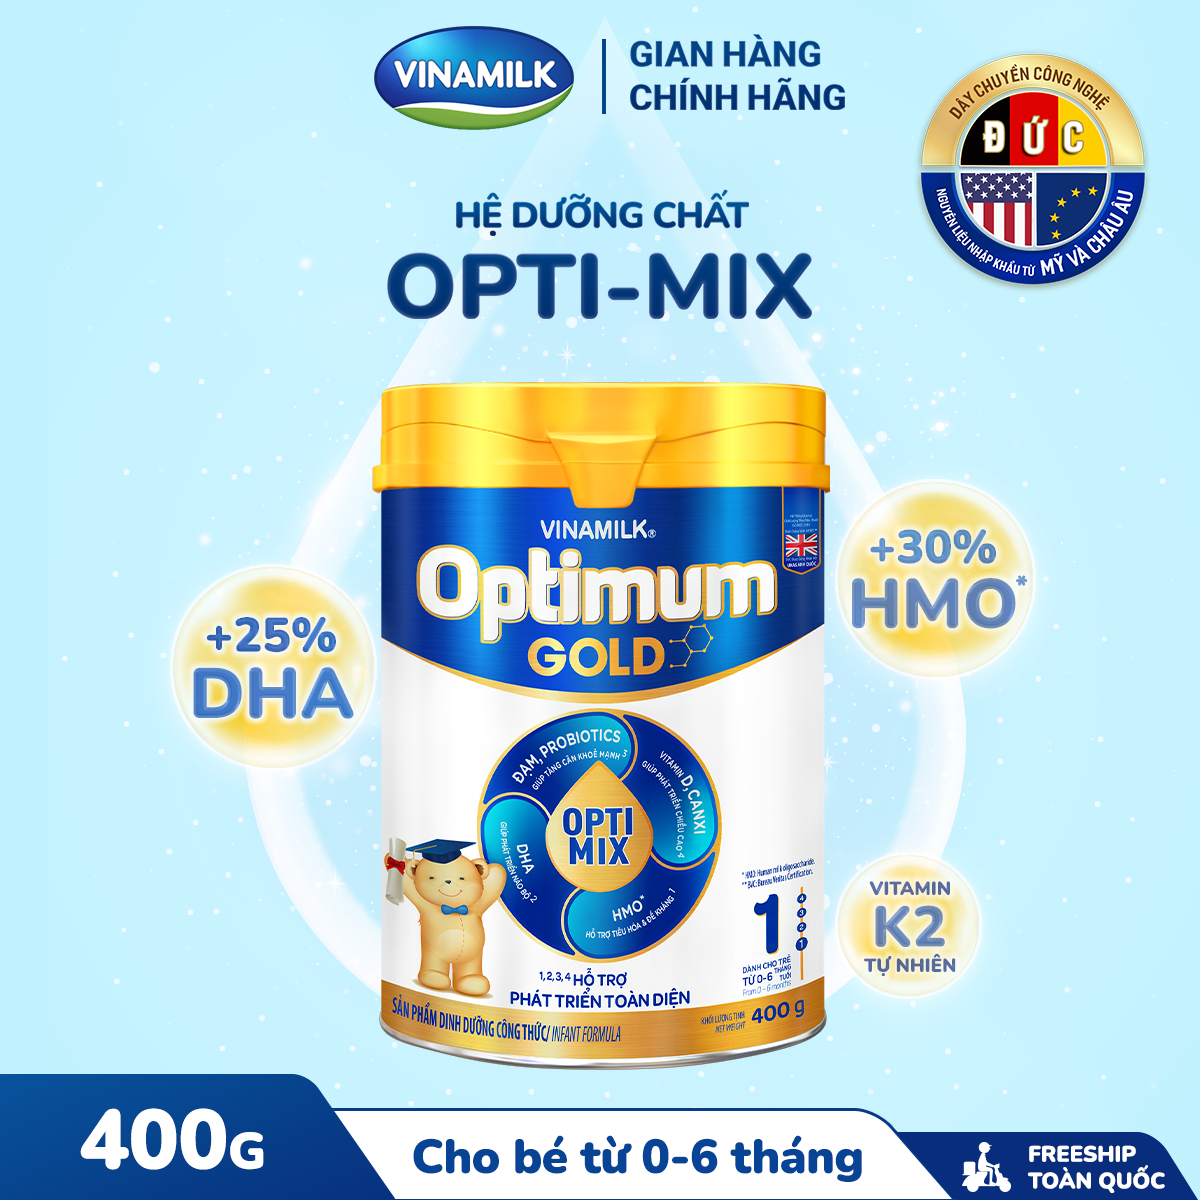 Hộp Sữa bột Vinamilk Optimum Gold 1 - Hộp thiếc 400g (cho bé từ 0 - 6 tháng tuổi) Sữa cho trẻ sơ sinh hỗ trợ phát triển toàn diện, chất lượng quốc tế